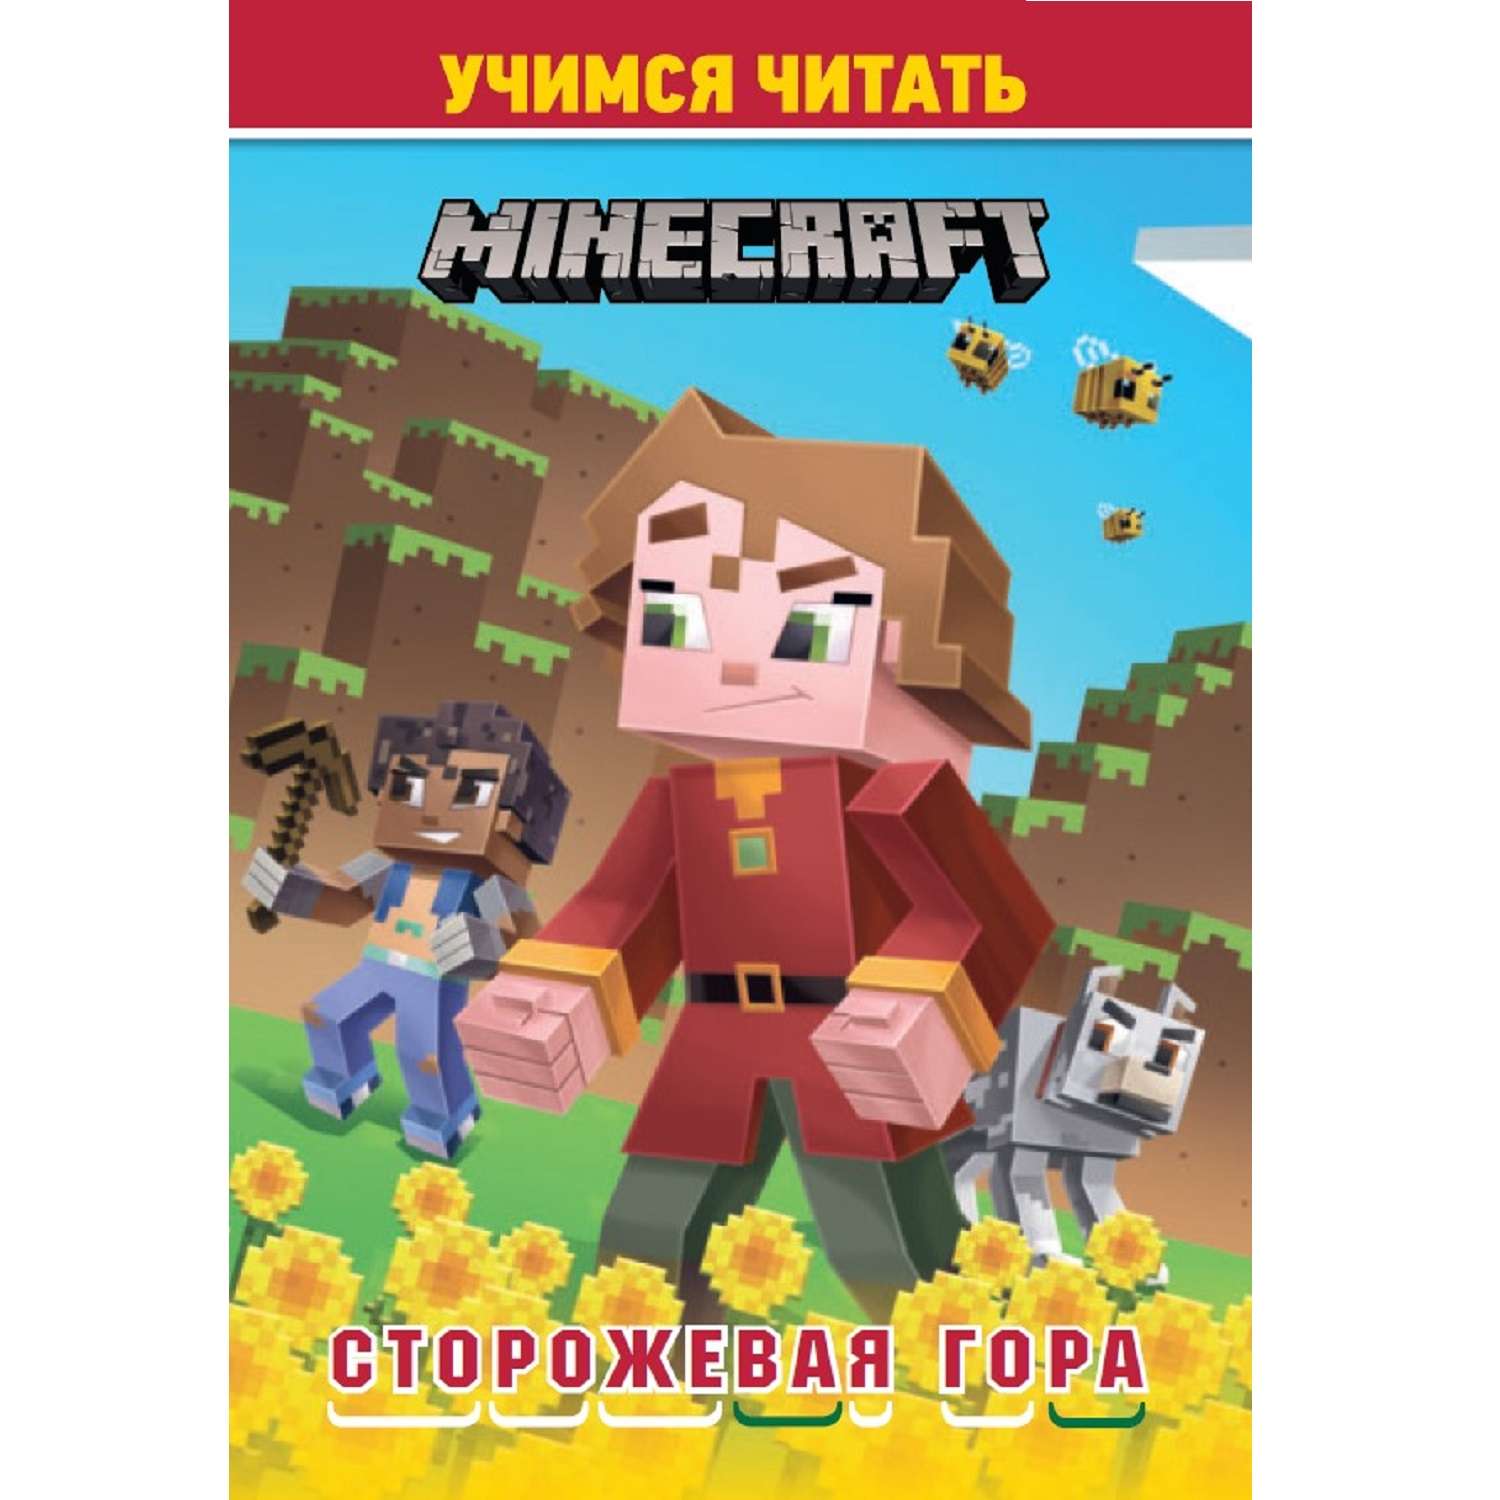 Книга Учимся читать Minecraft Сторожевая гора - фото 1